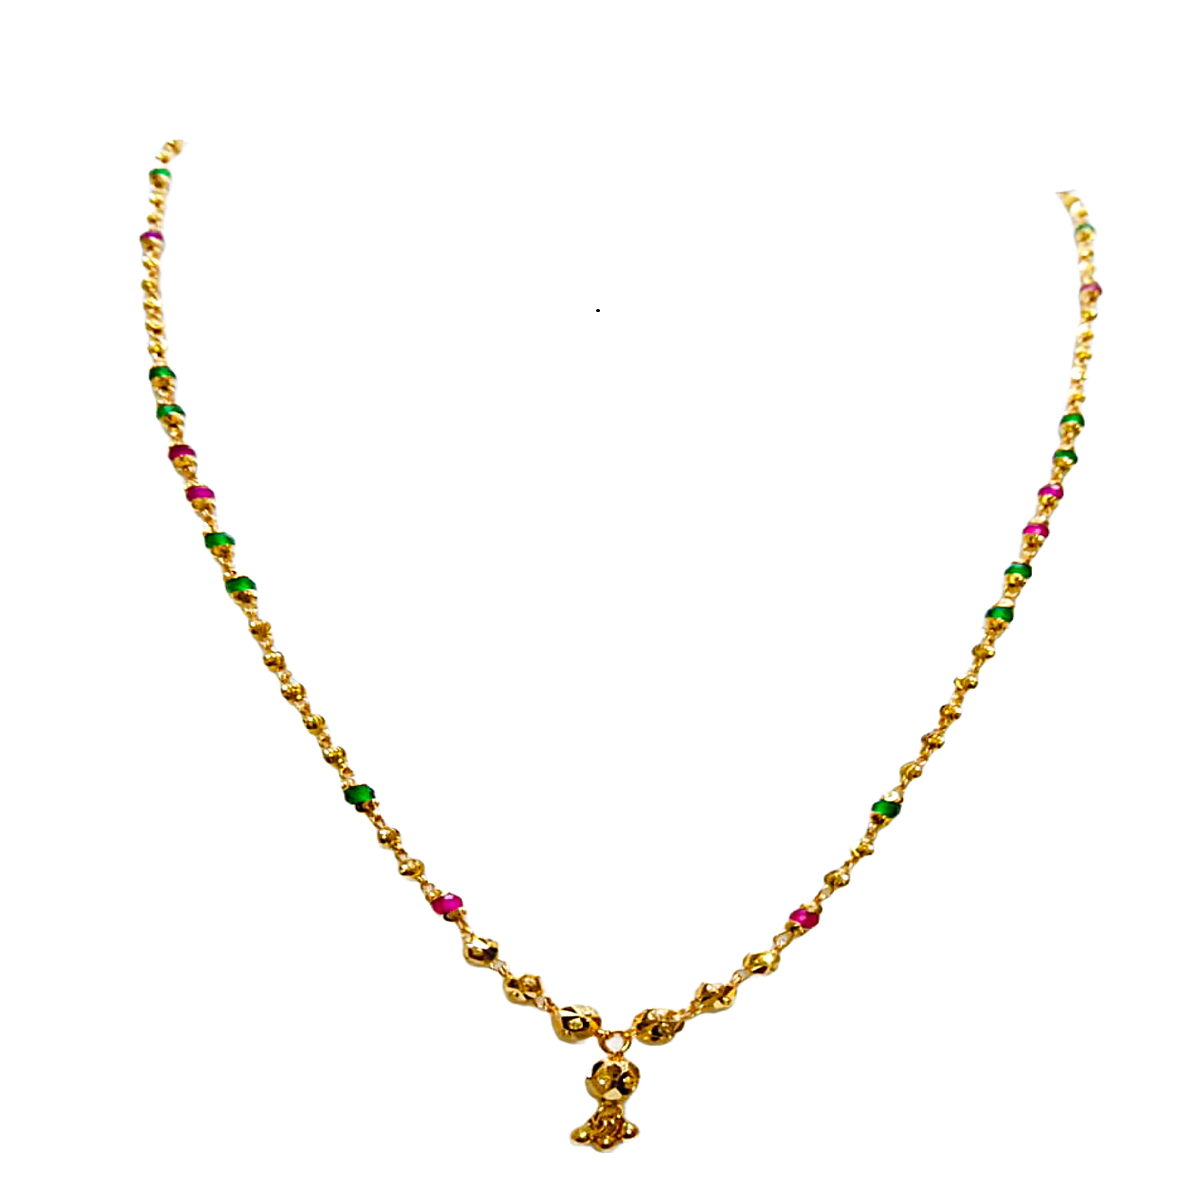 Gopala gold chain